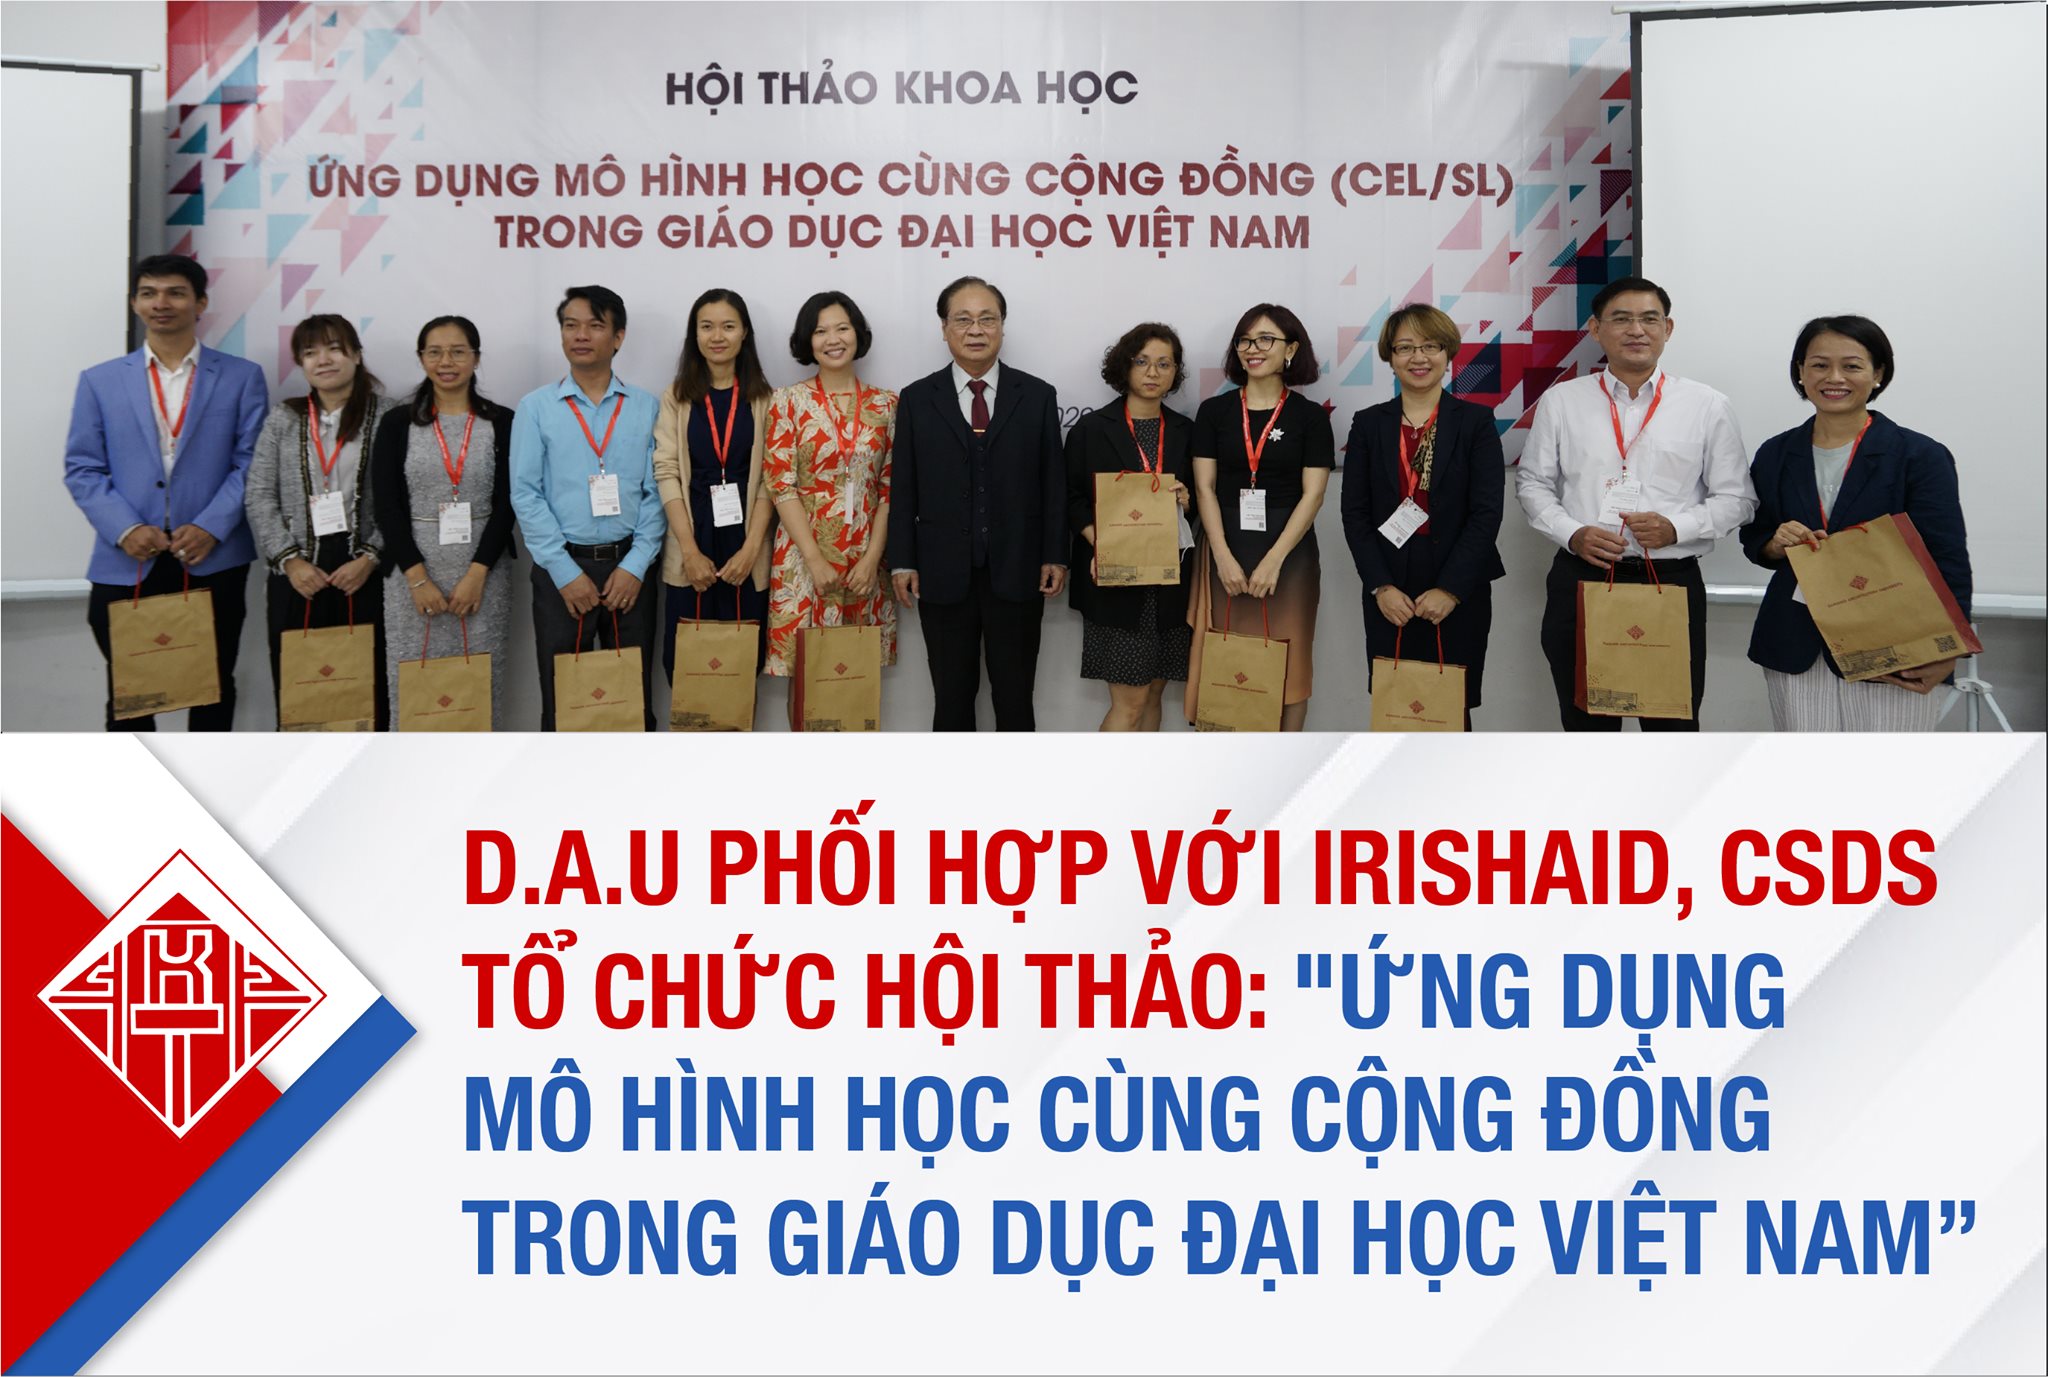 Hội thảo: “Ứng dụng Mô hình “Học cùng cộng đồng (CEL/SL) trong giáo dục Đại học Việt Nam”